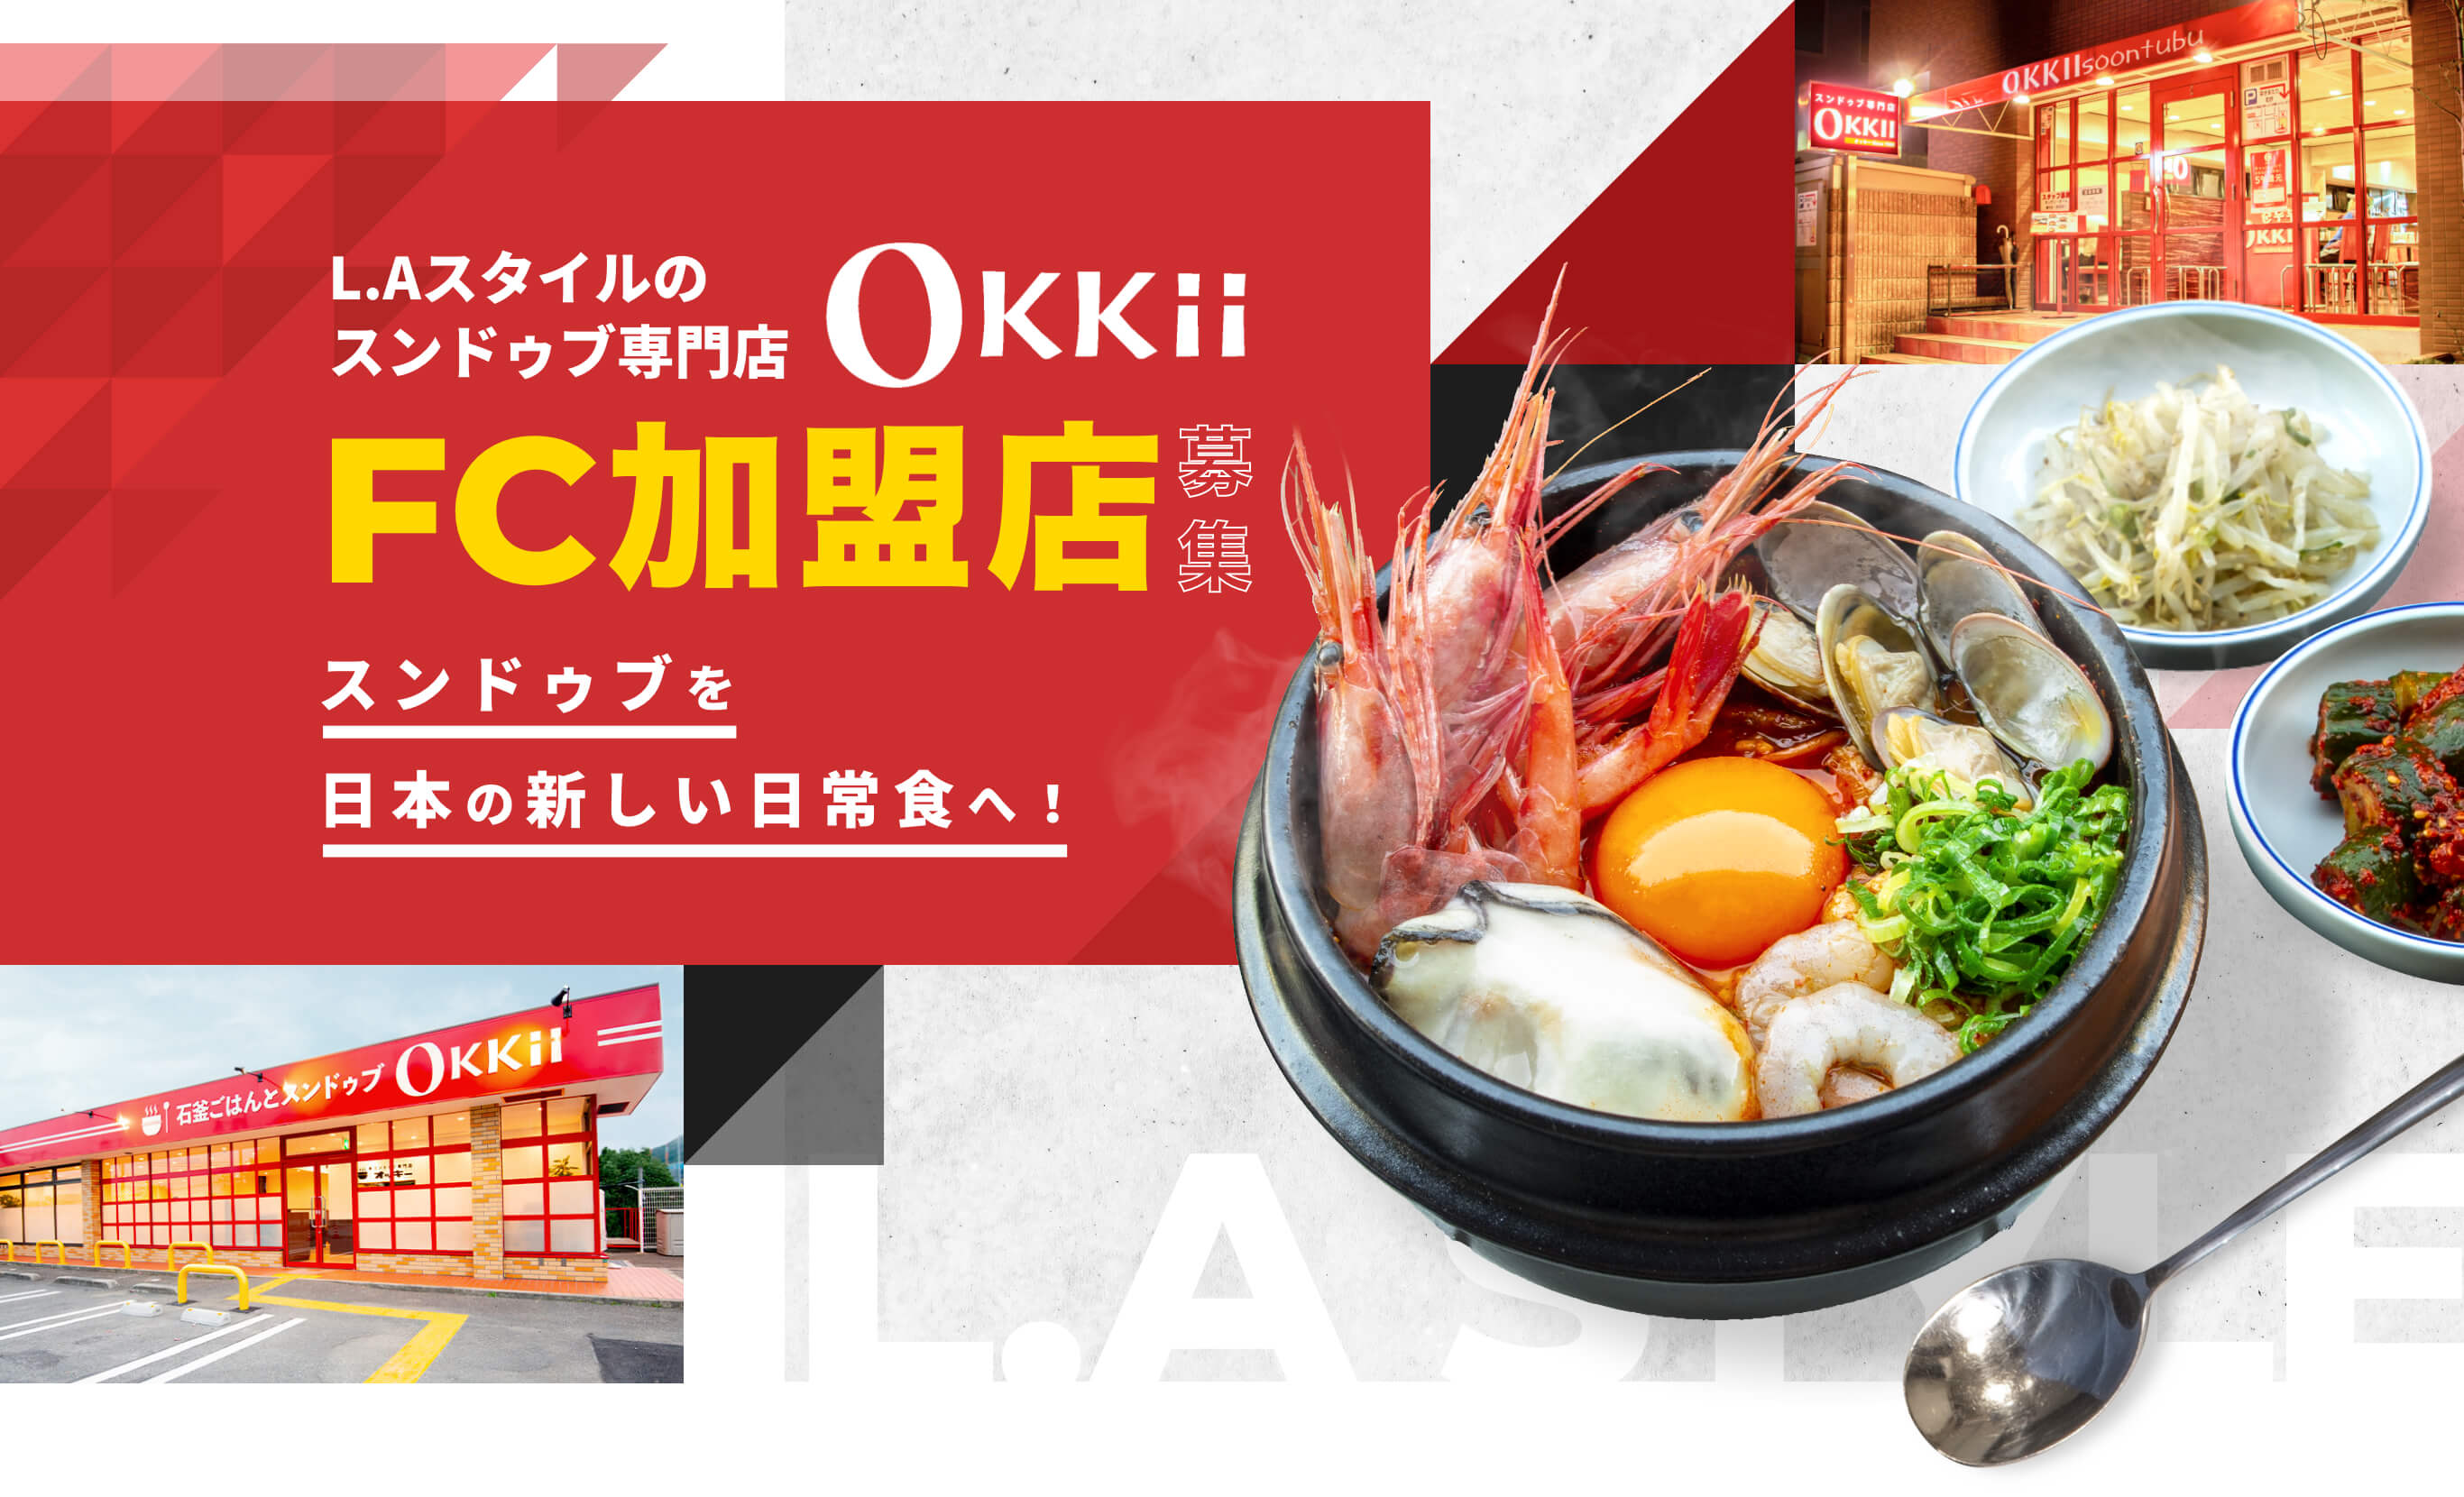 L.Aスタイルのスンドゥブ専門店Okkii FC加盟店募集 スンドゥブを日本の新しい日常食へ！